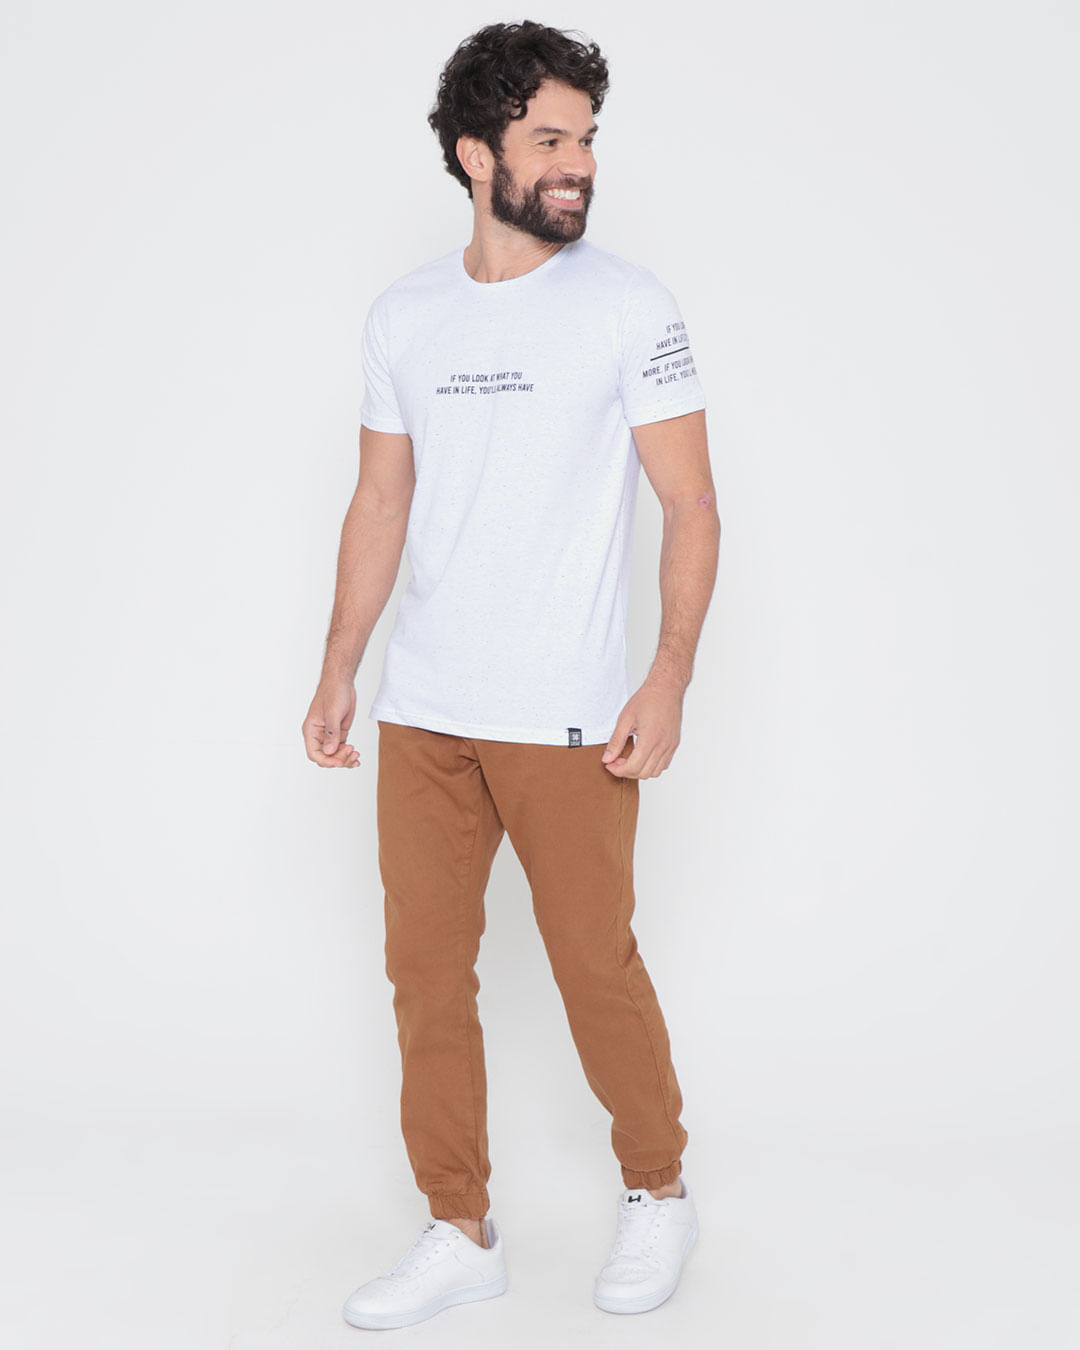 Camiseta-Botone-Estampa-Urban-Culture-Branca